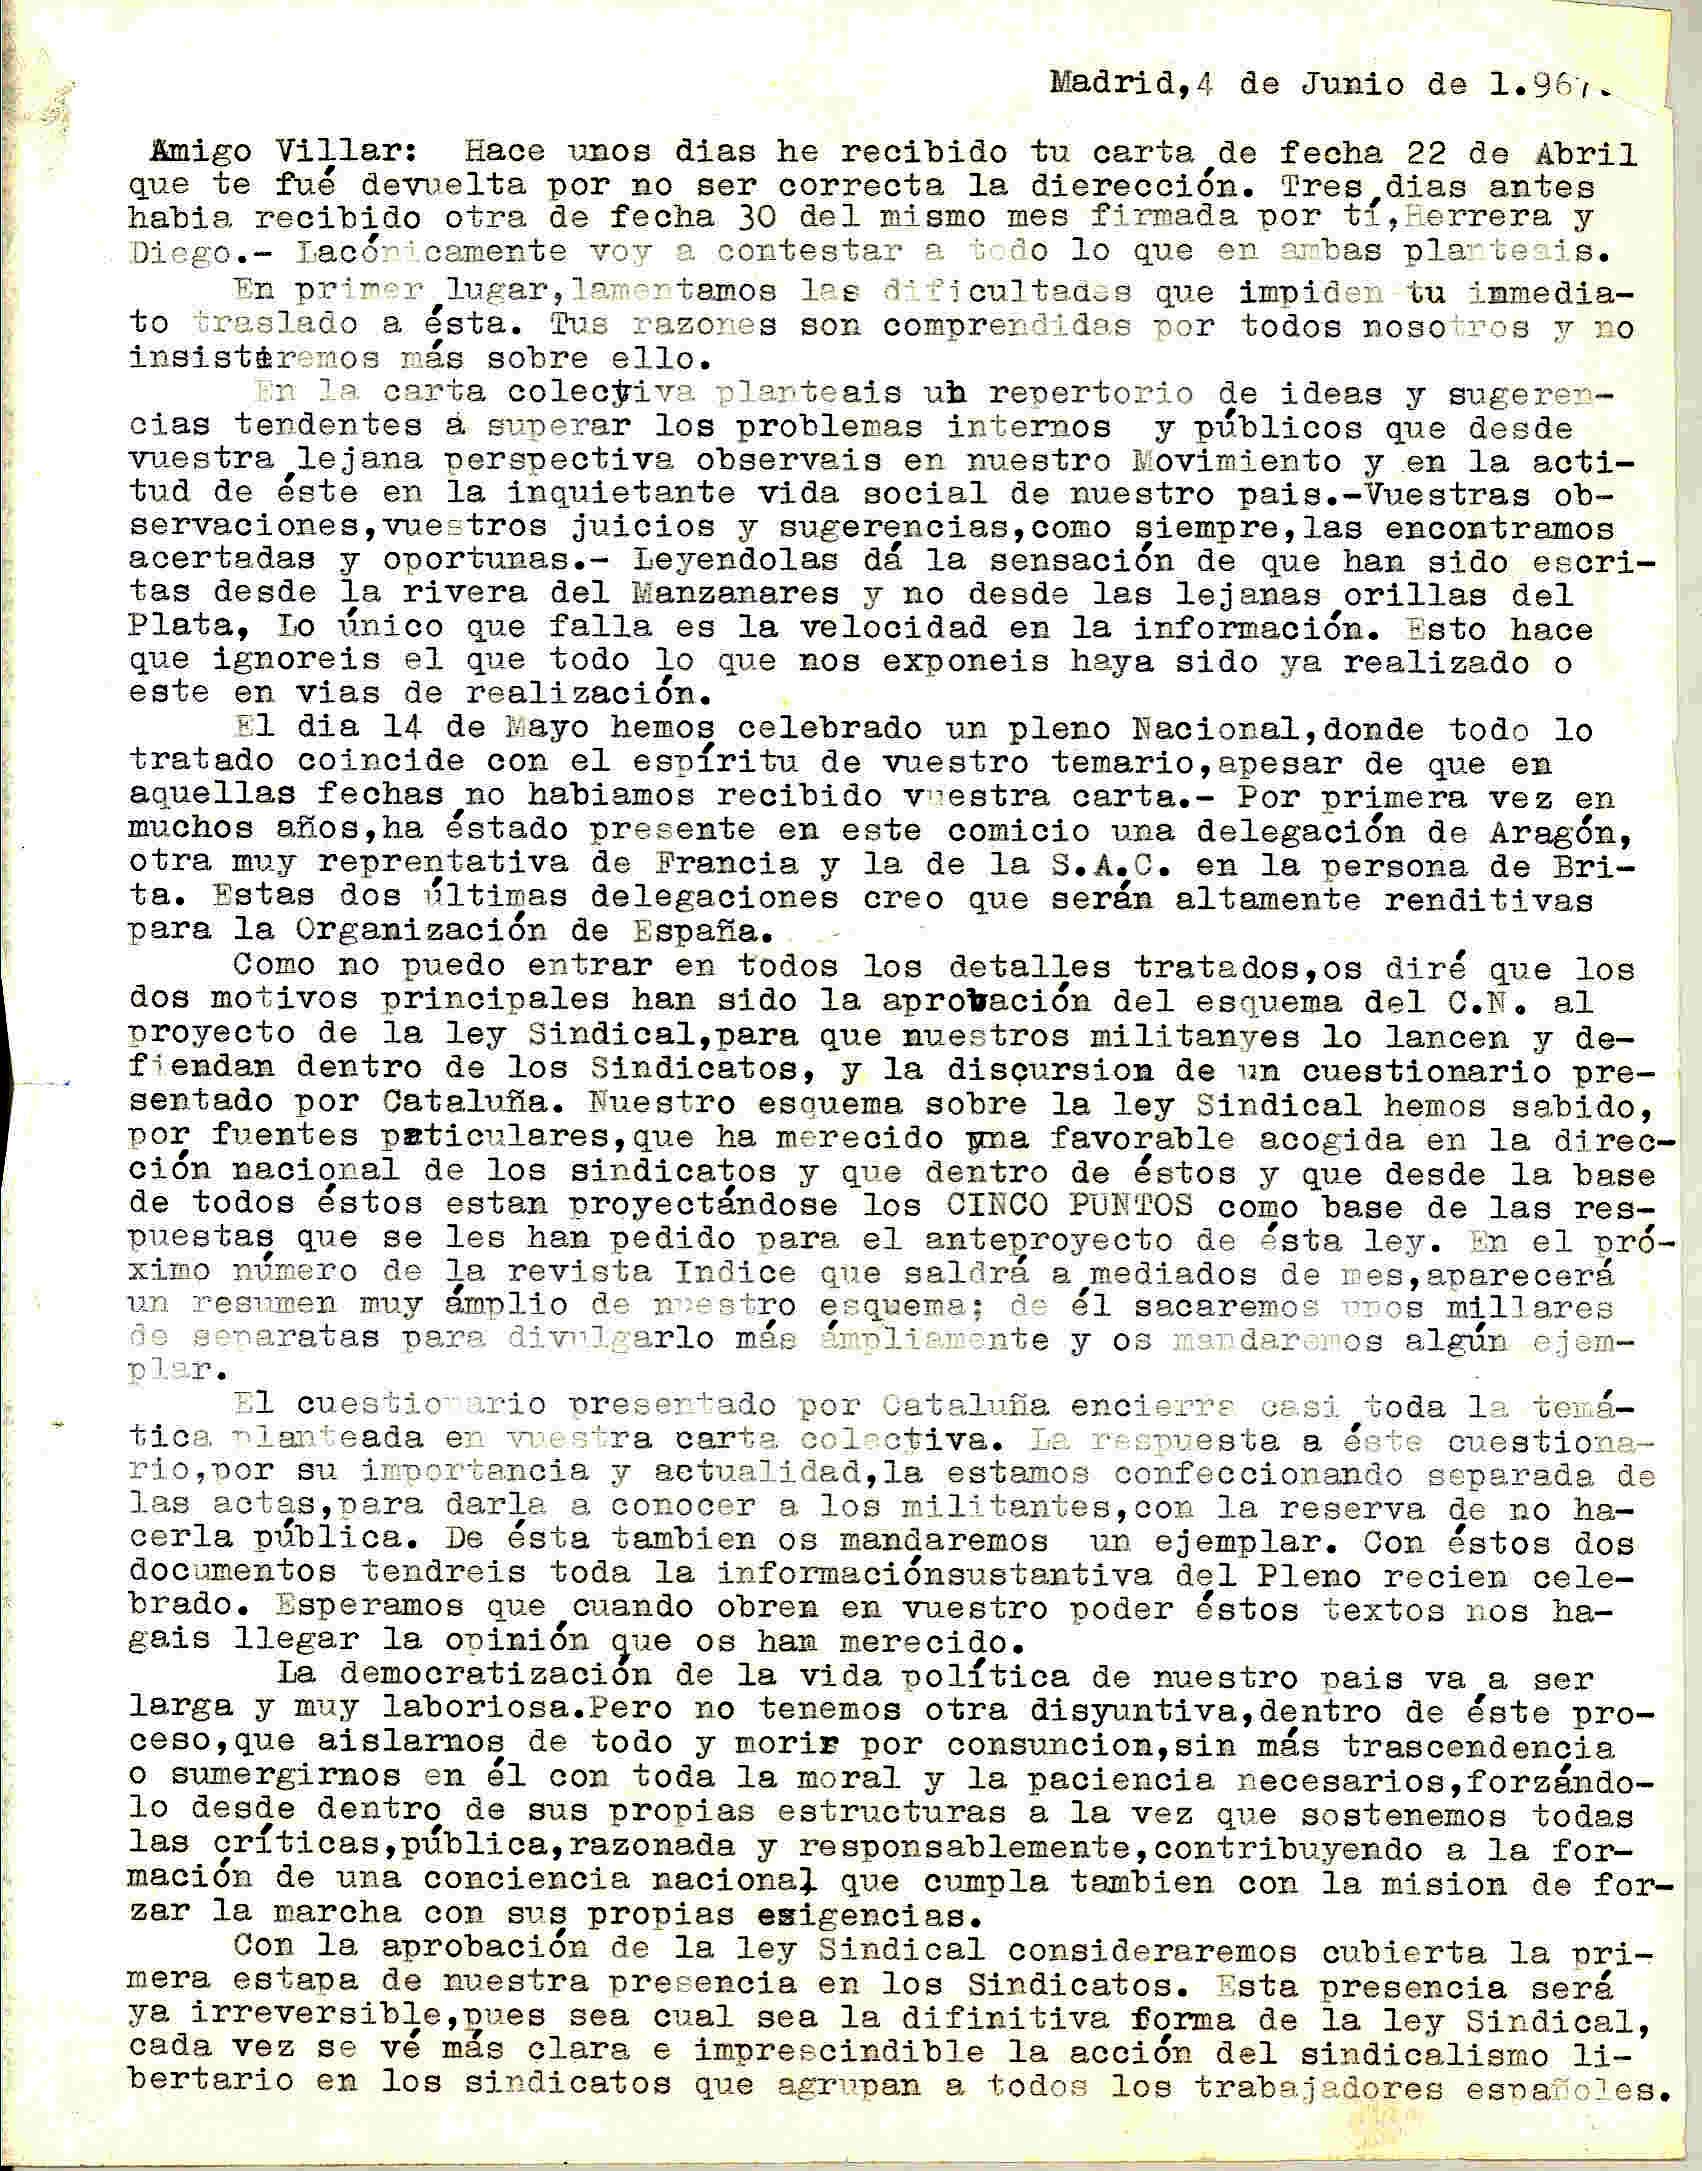 Carta a Manuel Villar sobre el Pleno Nacional celebrado el 14/05/67, exponiéndole los temas tratados y lo acuerdos adoptados, entre ellos la democratización de la vida política de España